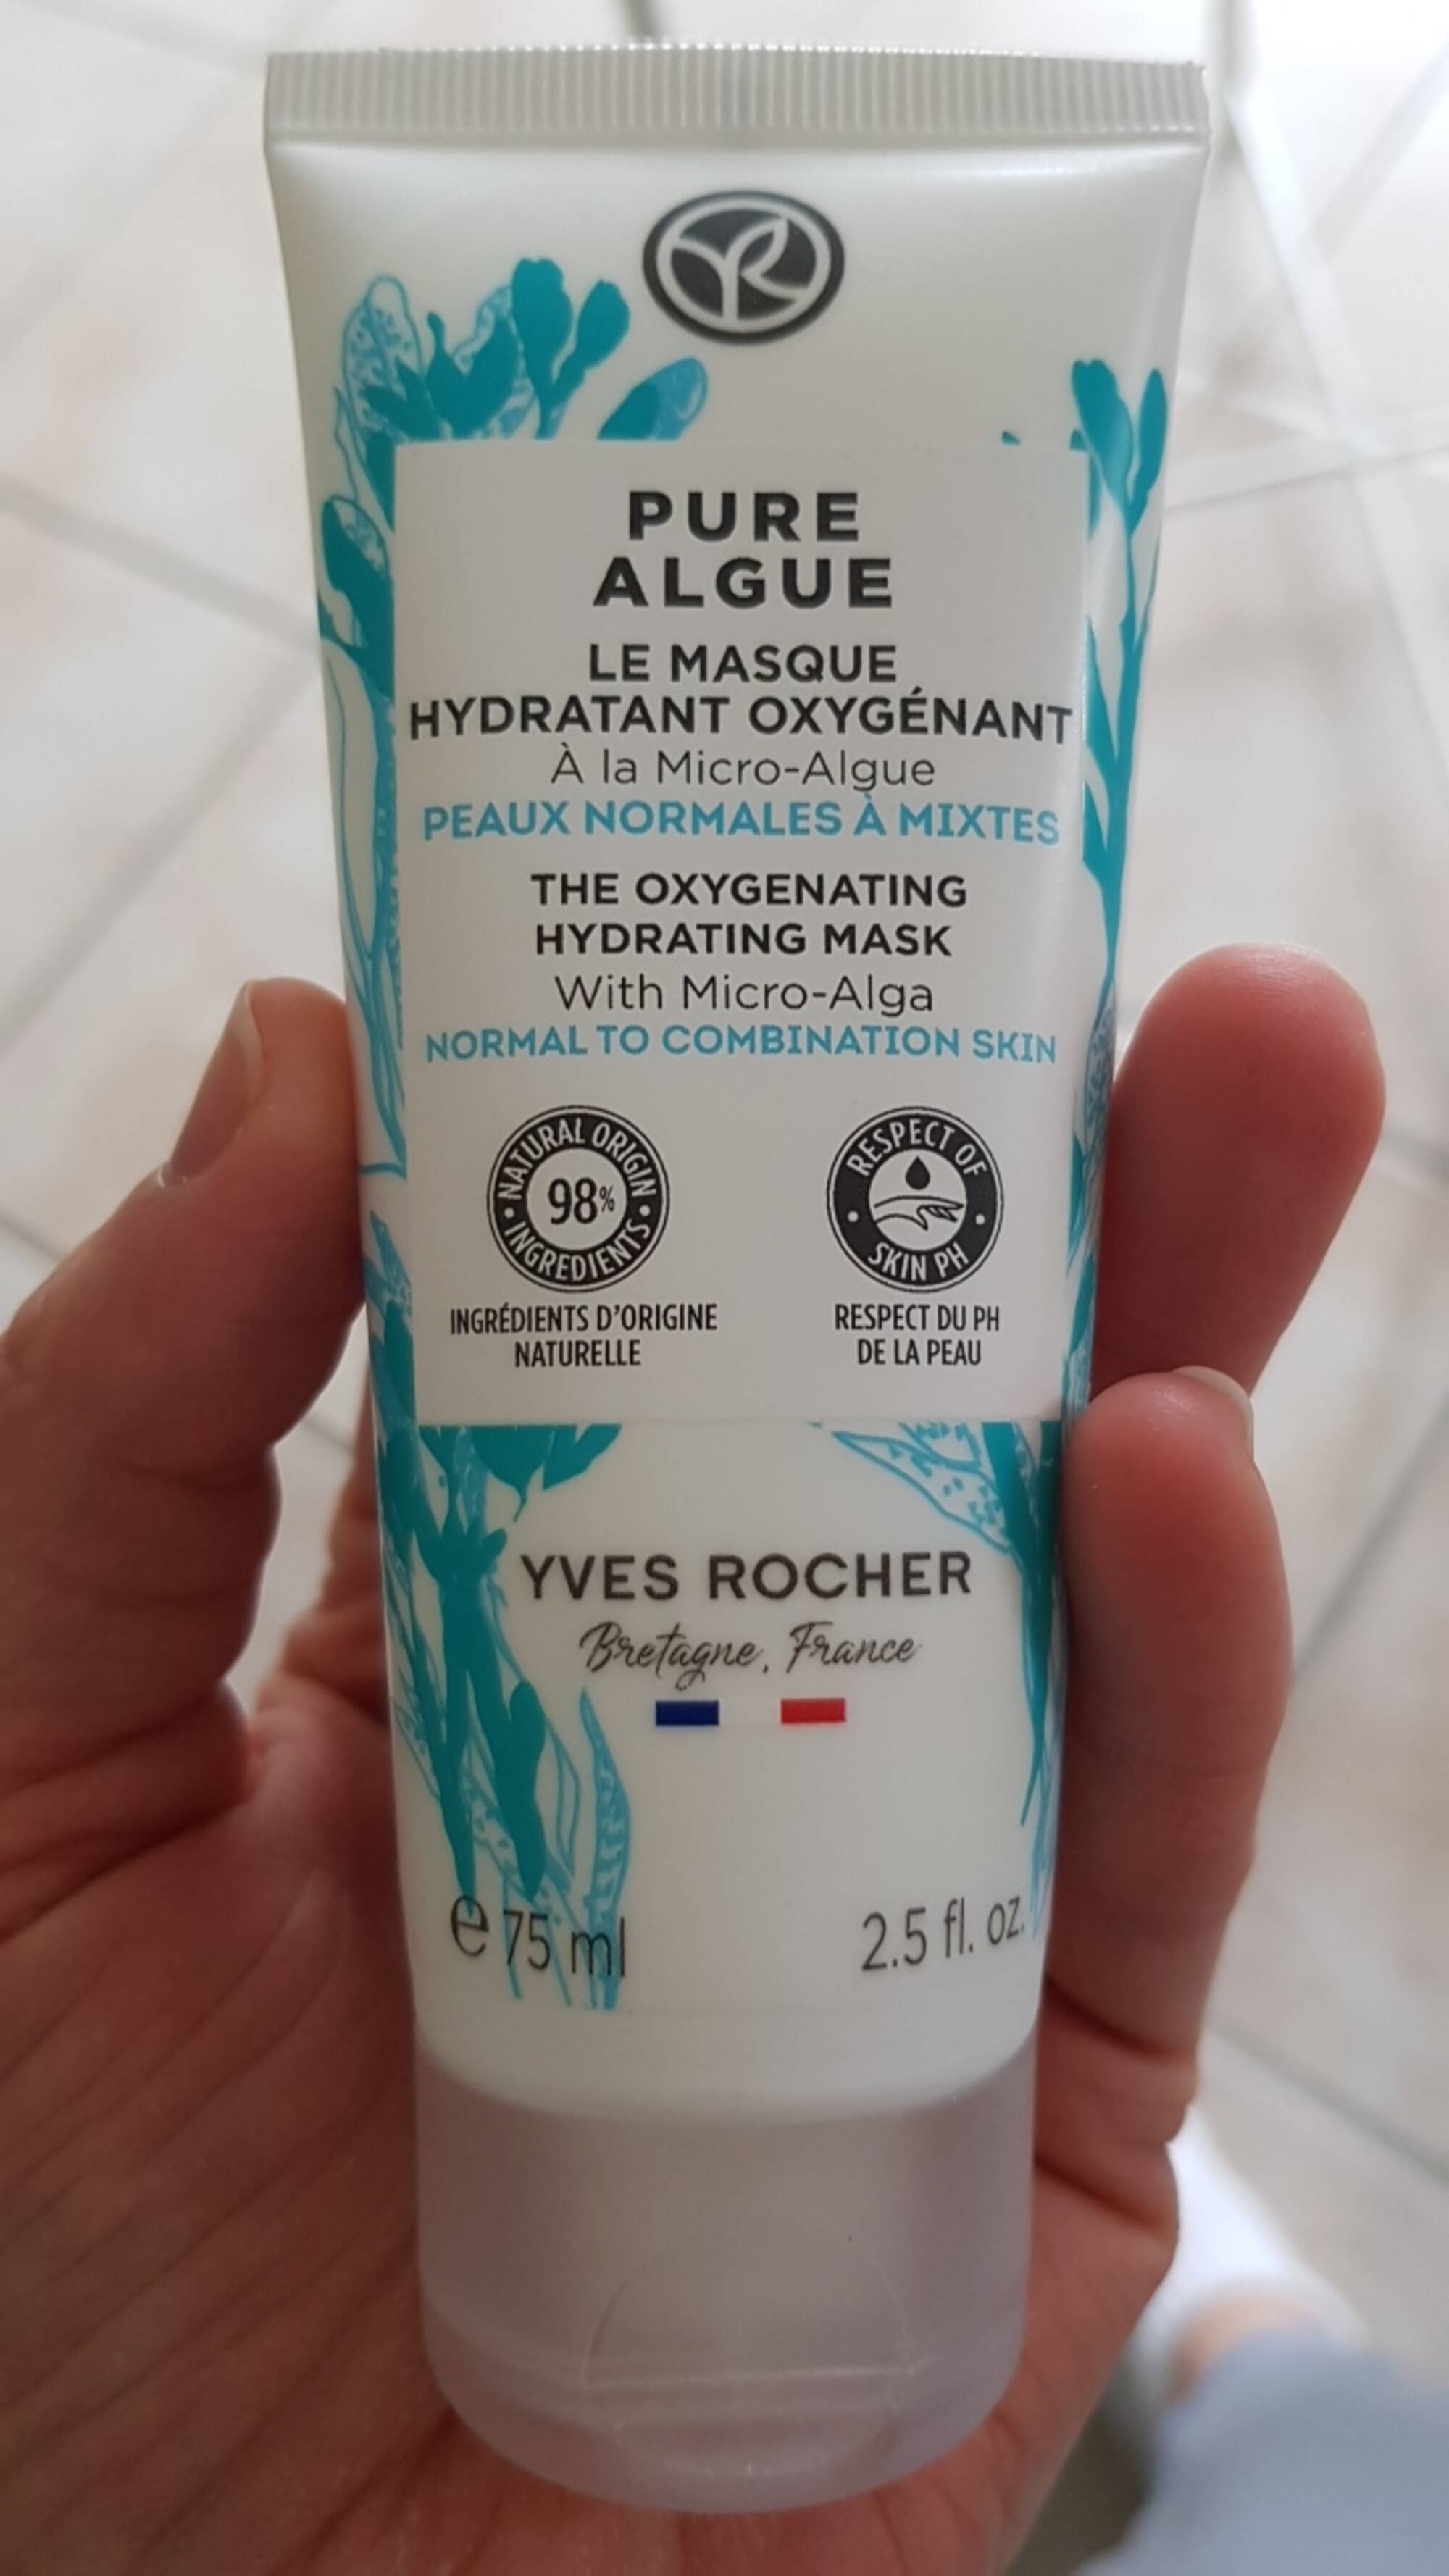 YVES ROCHER - Pure algue - Le masque hydratant oxygénant